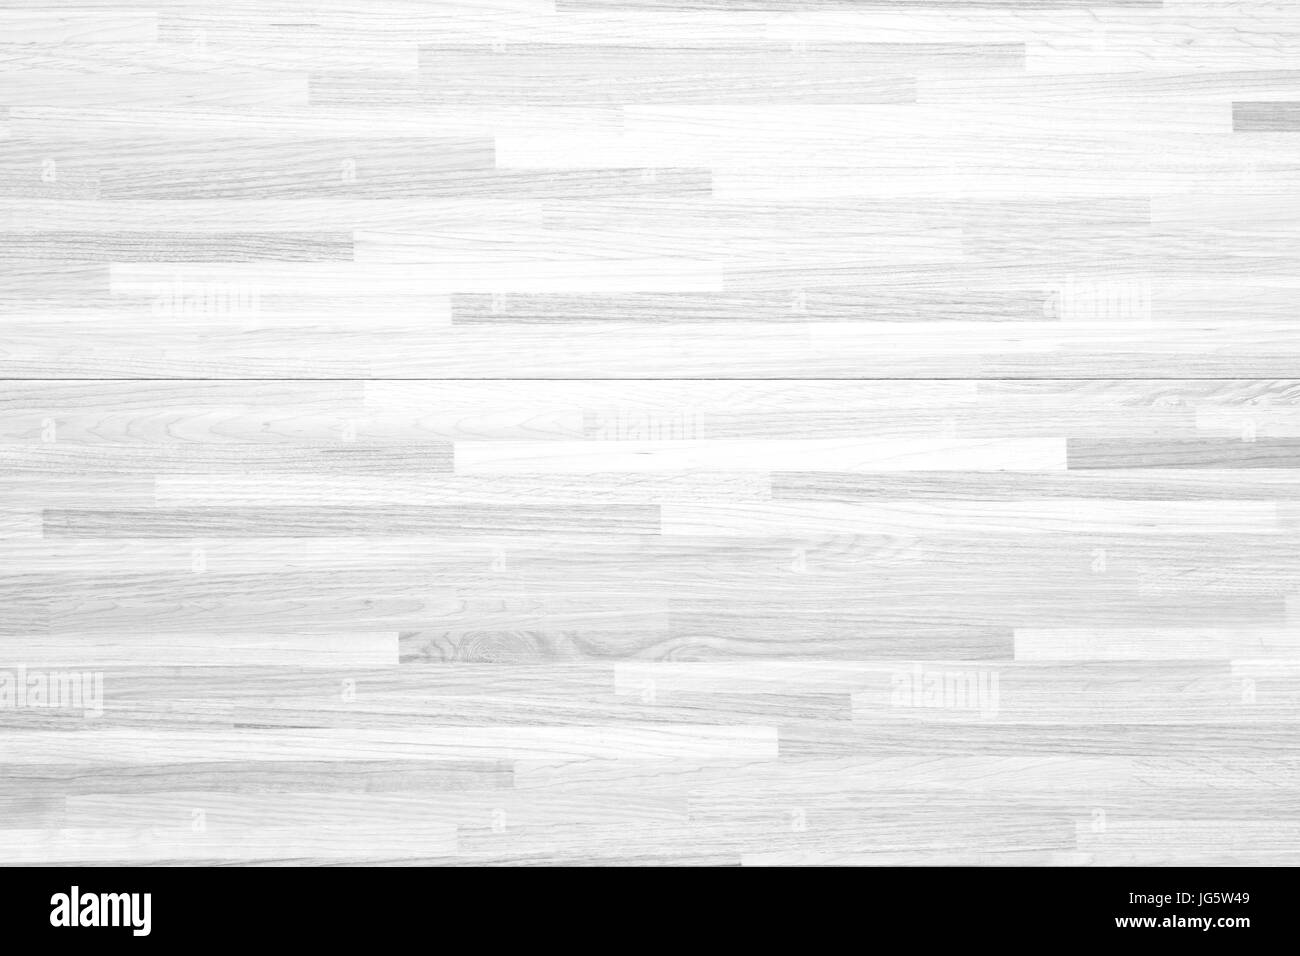 Weiße Holz Textur Wand Muster Hintergrundtextur. Stockfoto